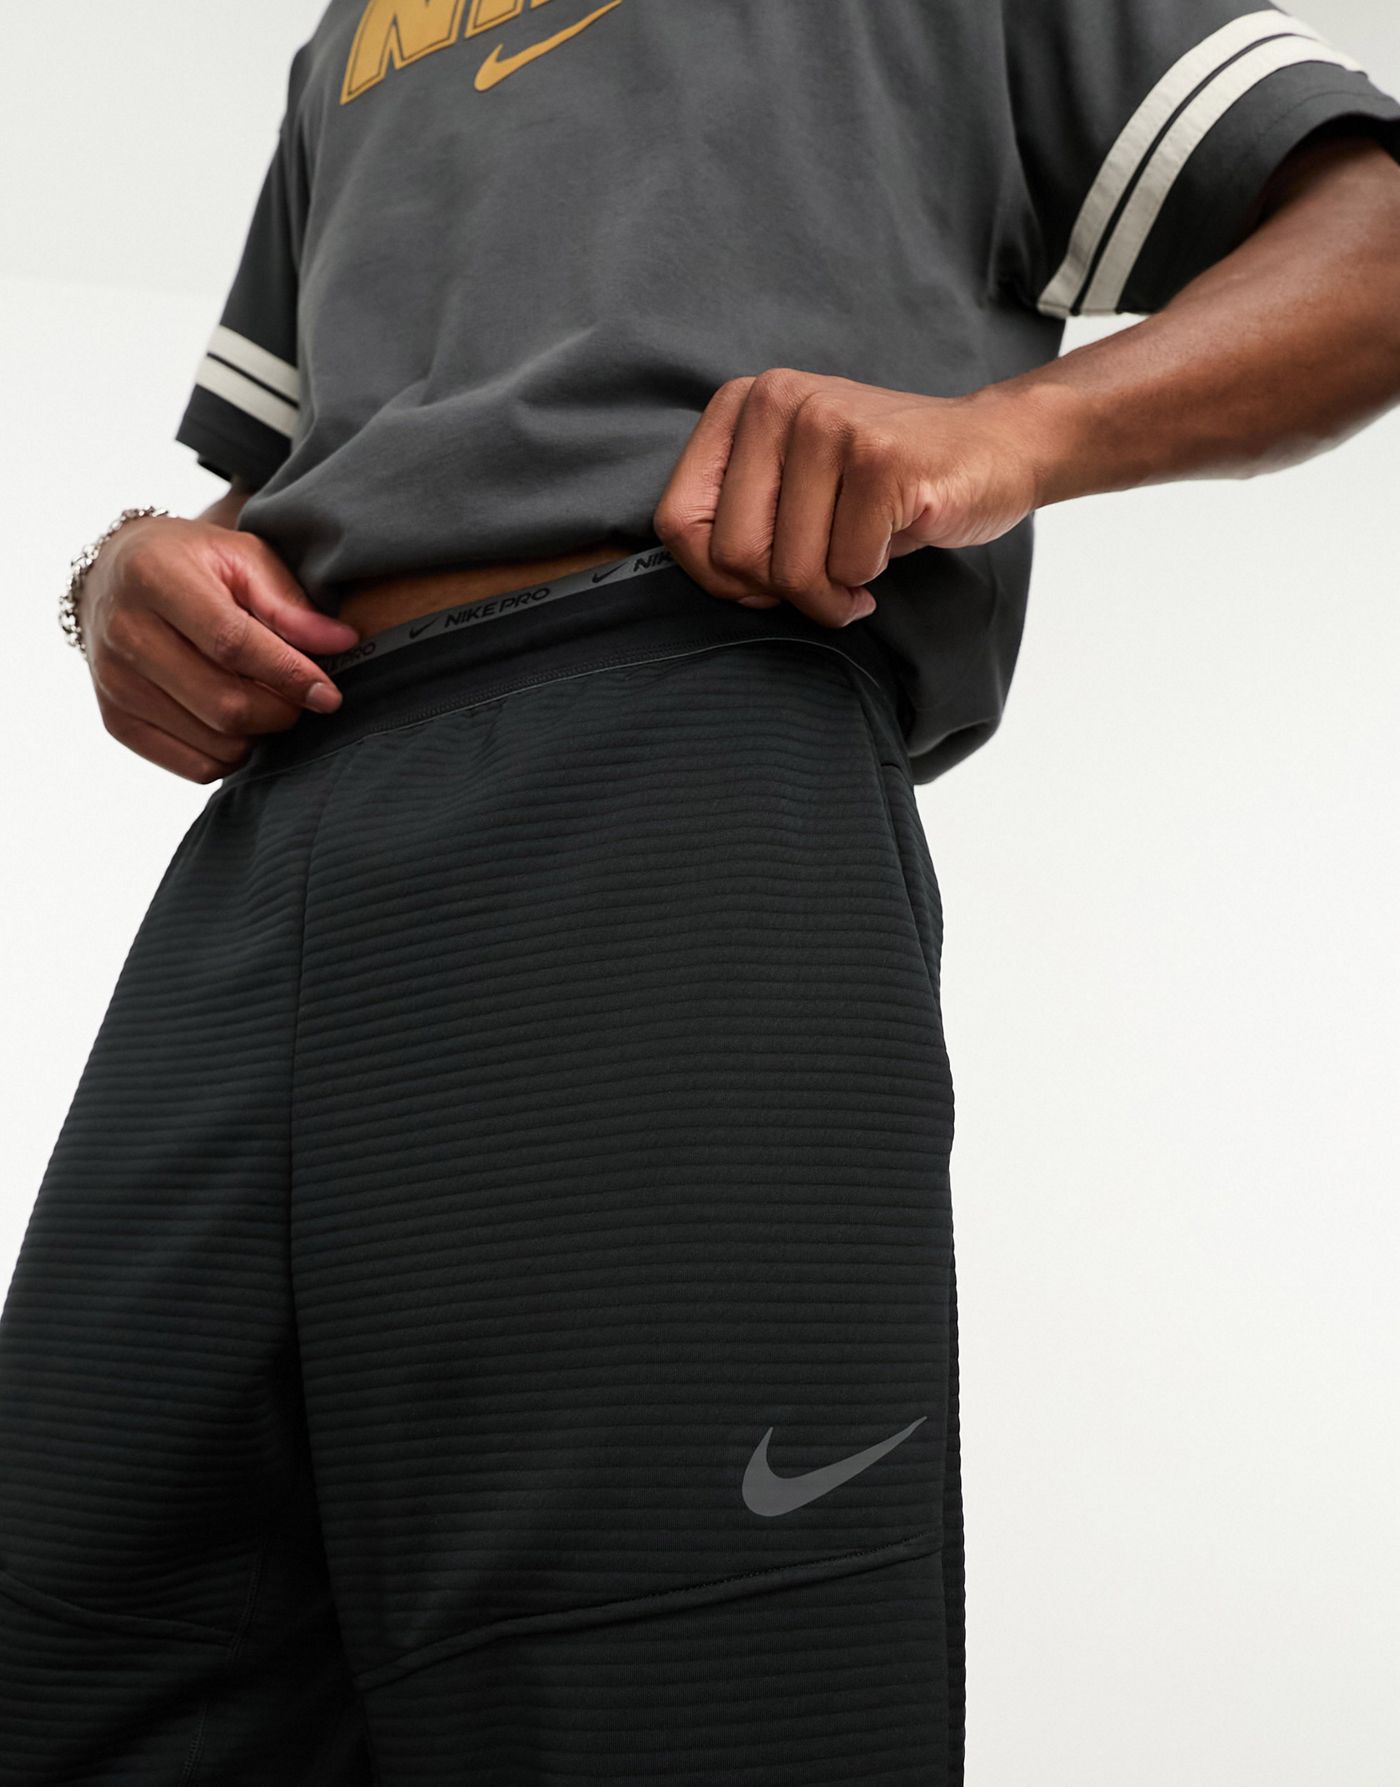 Nike Training Pro fleece joggers in black